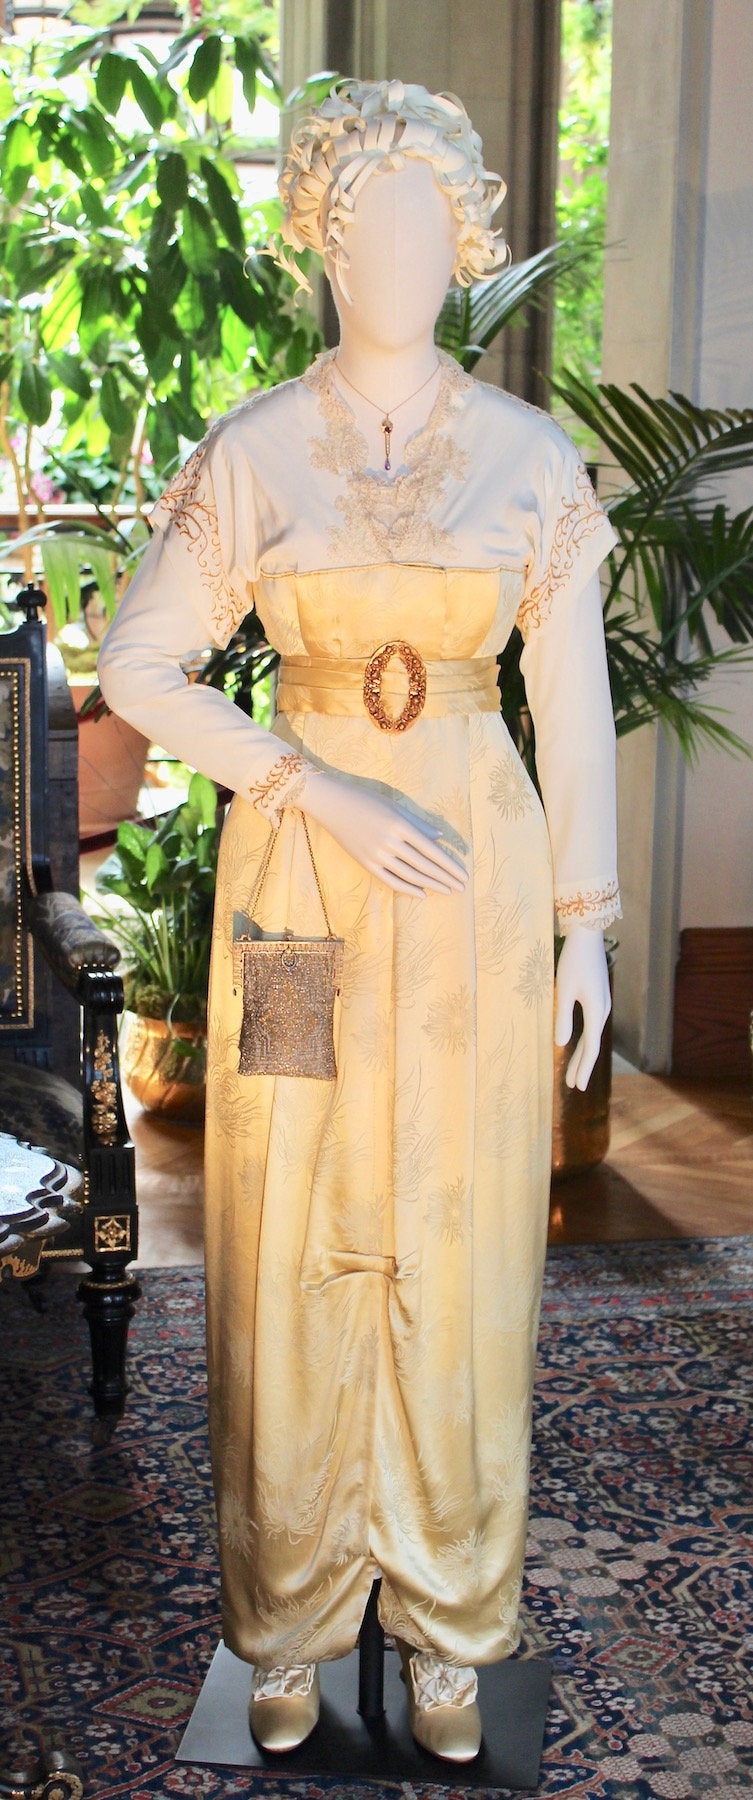 Delightful Velvet Titanic Belle Epoque Edwardian yellow titanic strolling dress